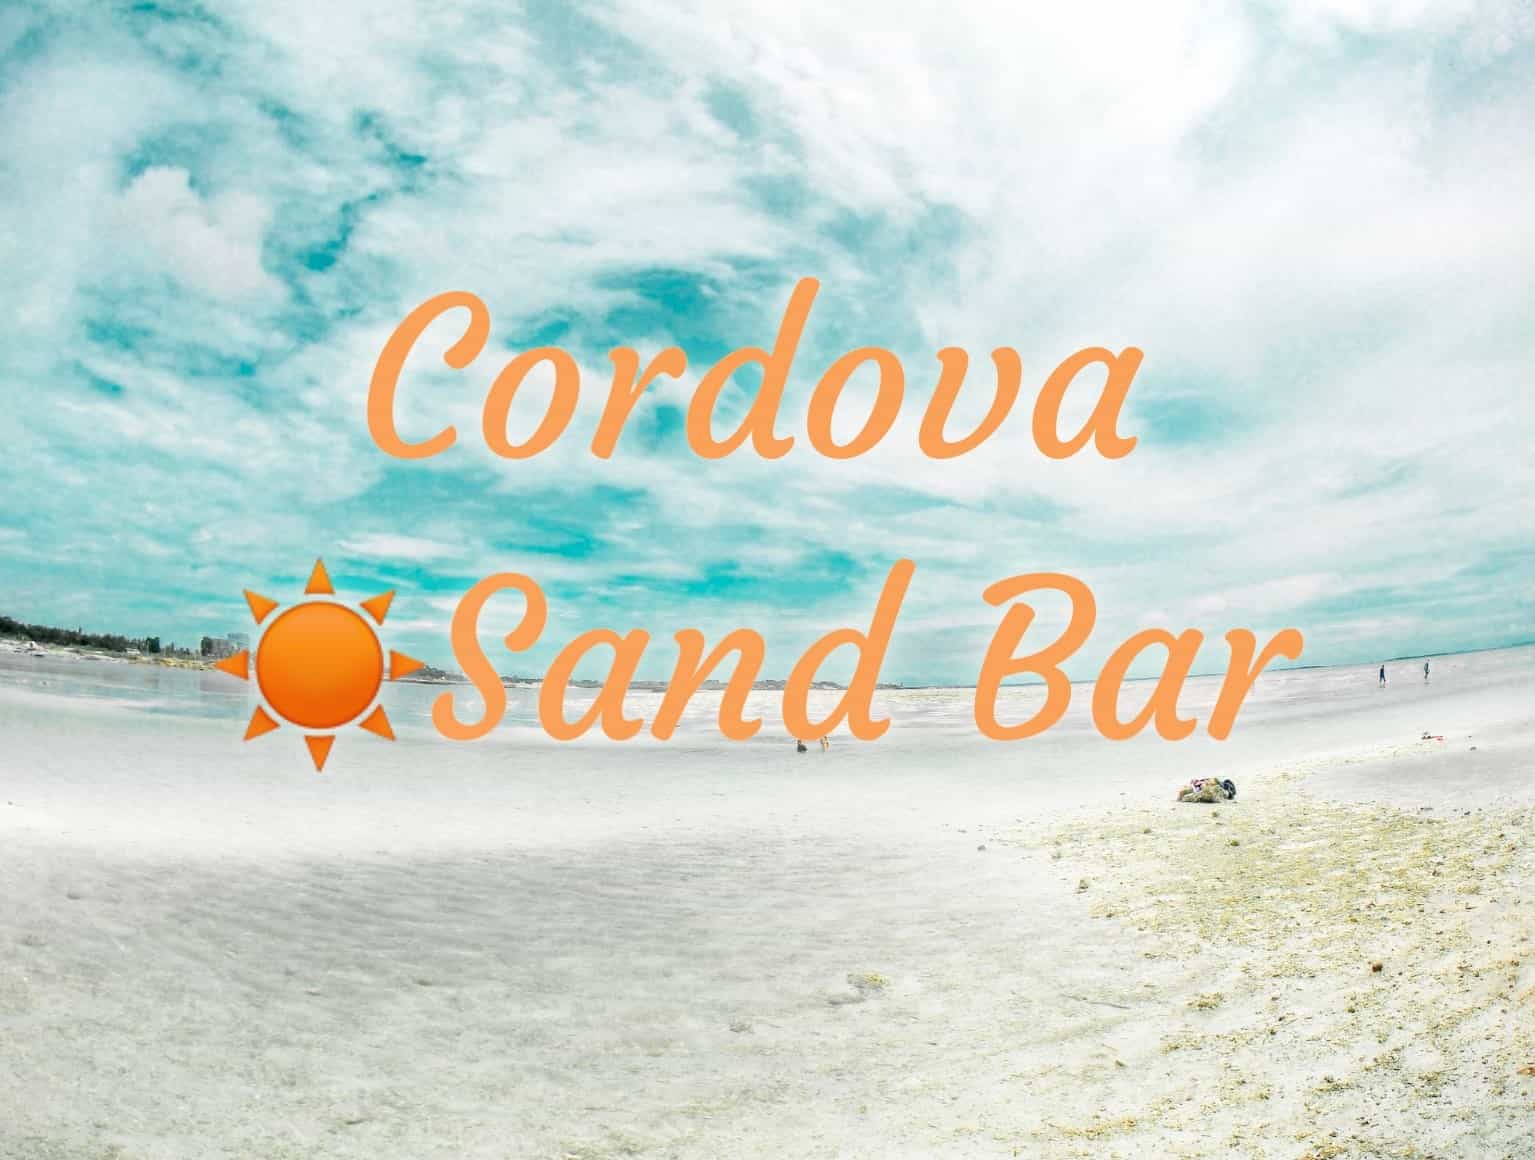 cordova white sandbar 